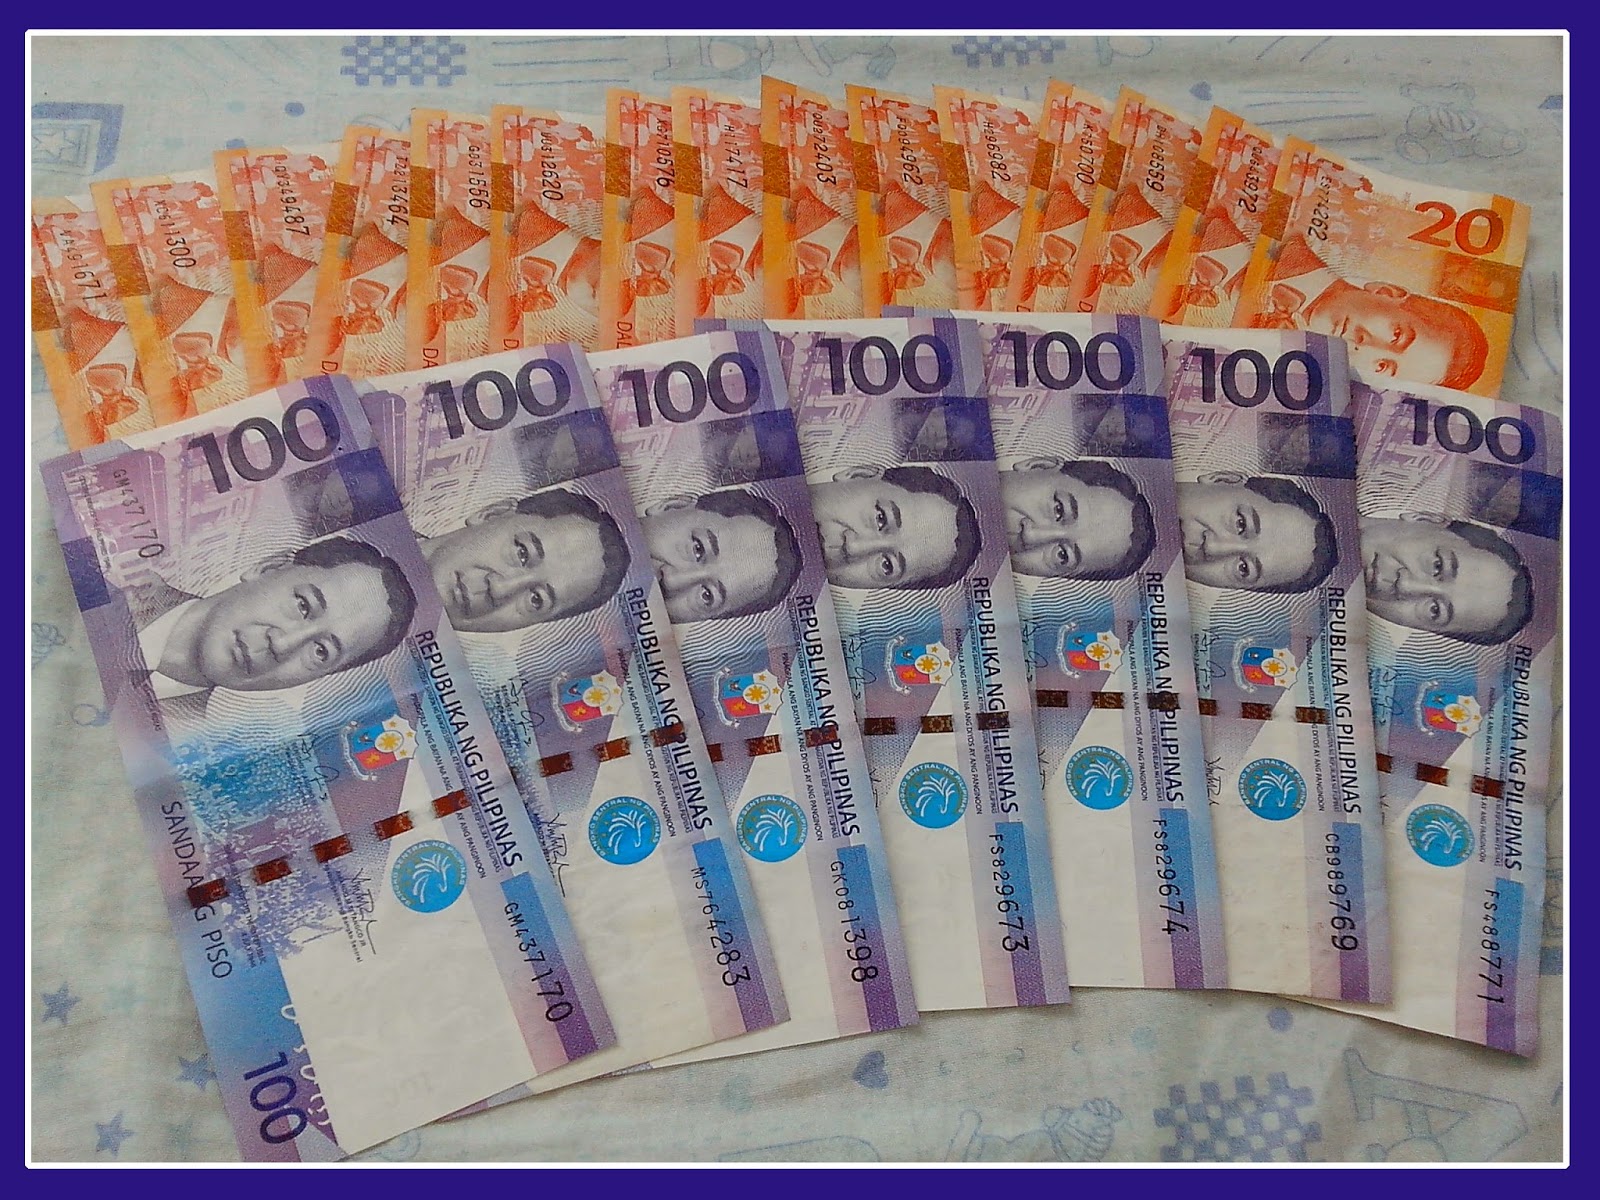 100 pesos pinay